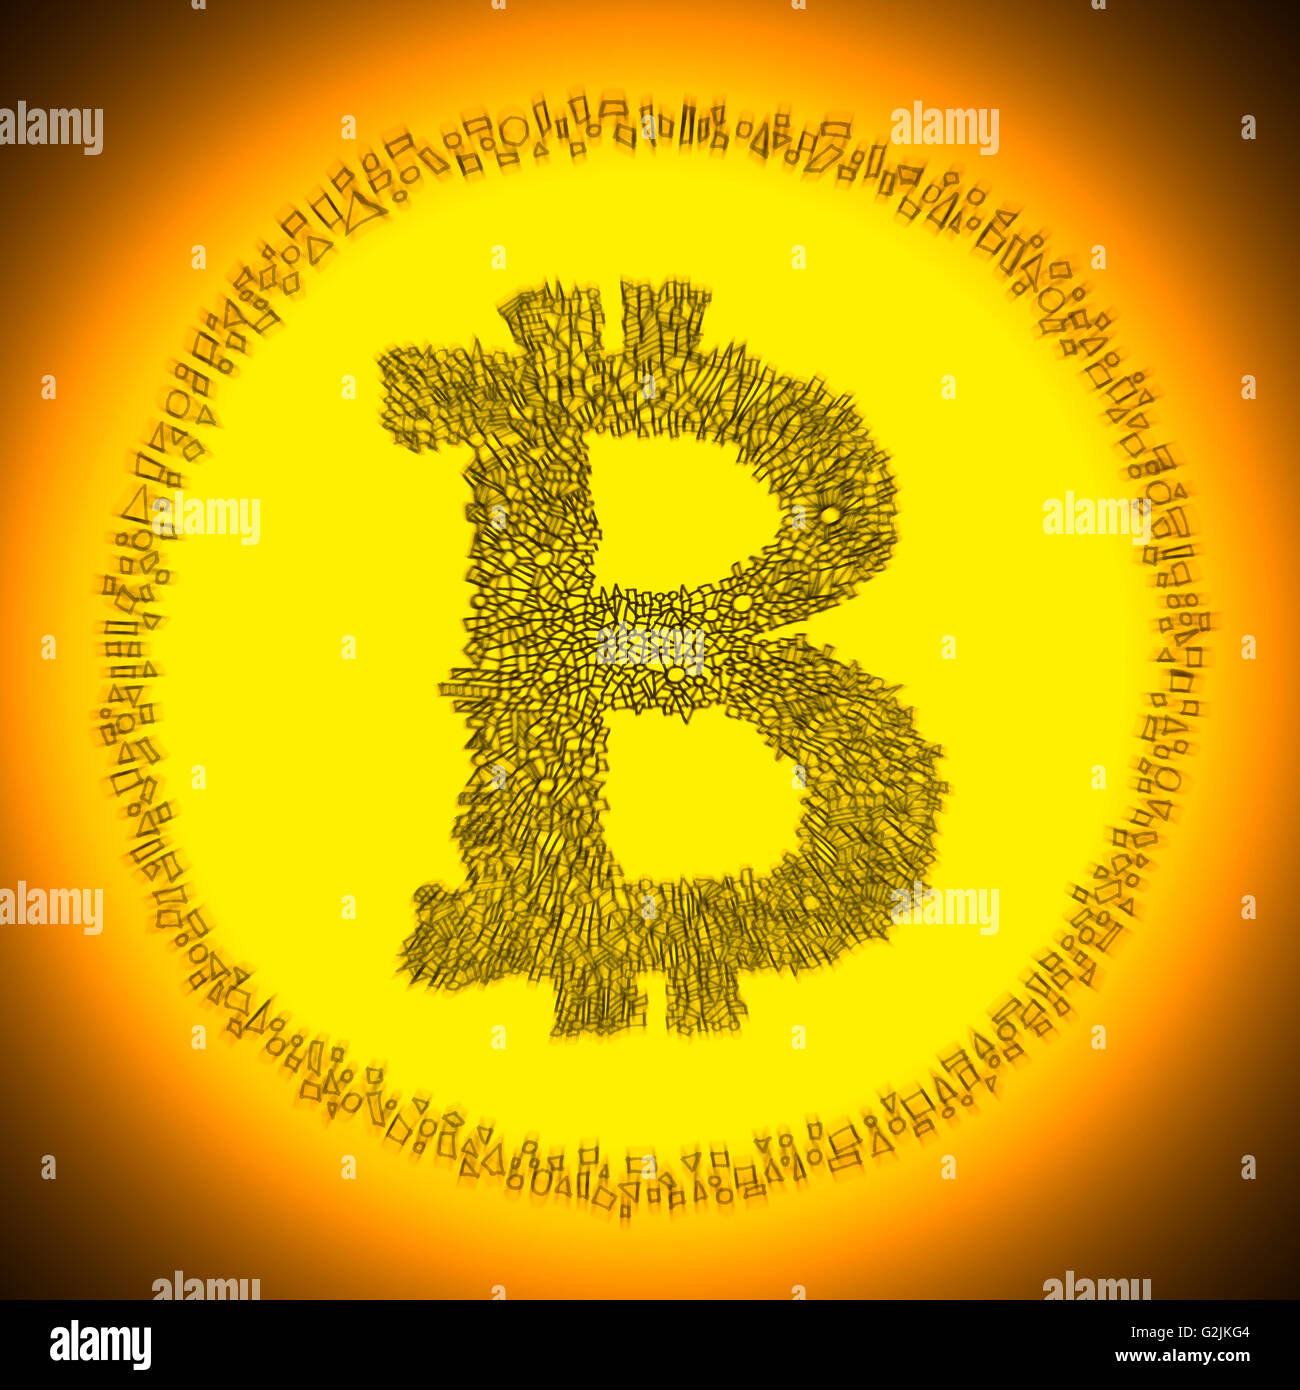 Ilustración Bitcoin radiantes doradas. El logo de una moneda moneda digital crypto descentralizada. Foto de stock